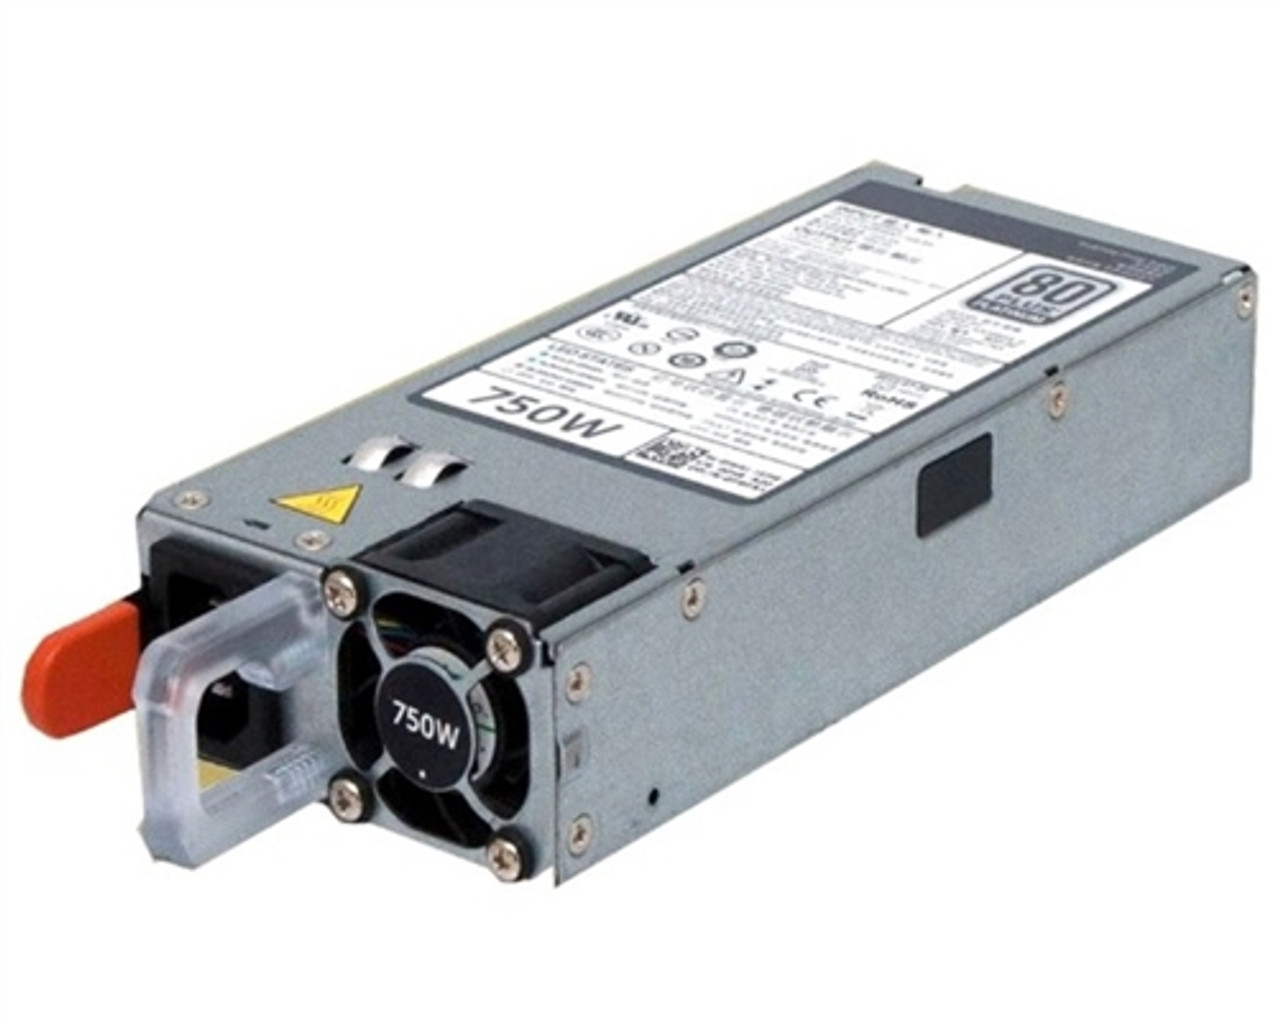 DELL V1YJ6 750 Watt Hot Swap Power Supply For Poweredge R730, R730xd, R630, T430, T630